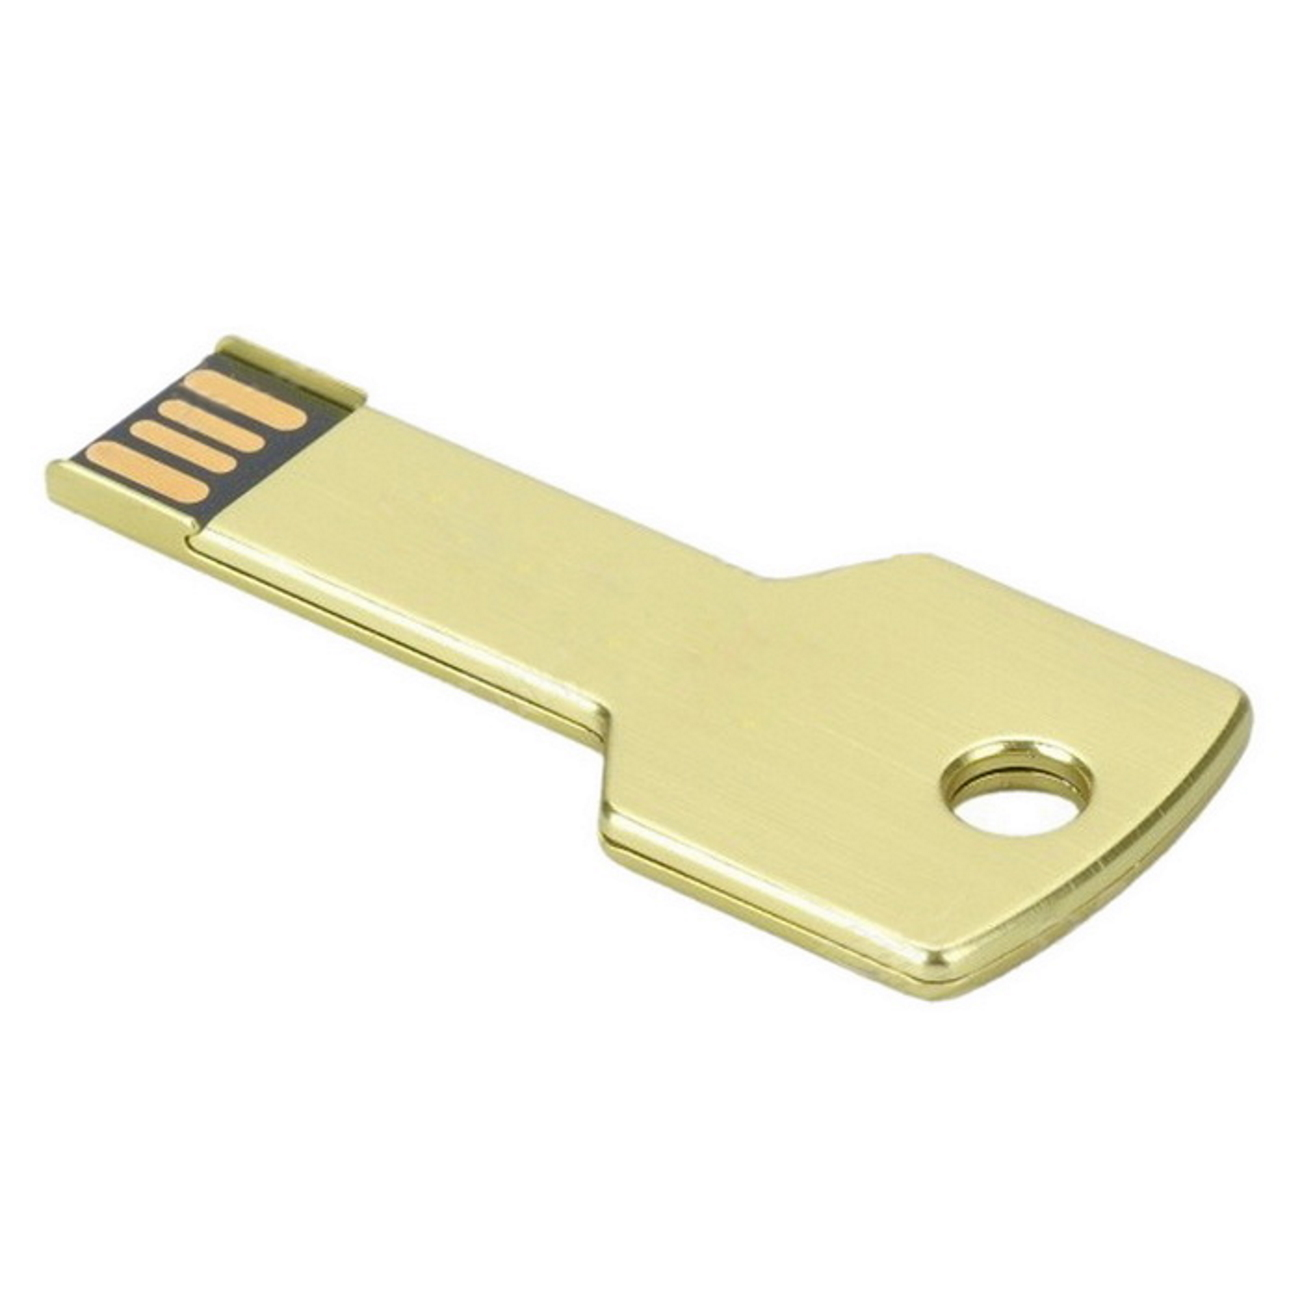 Gold GB) Key USB 2 USB-Stick 2GB GERMANY (Gold,